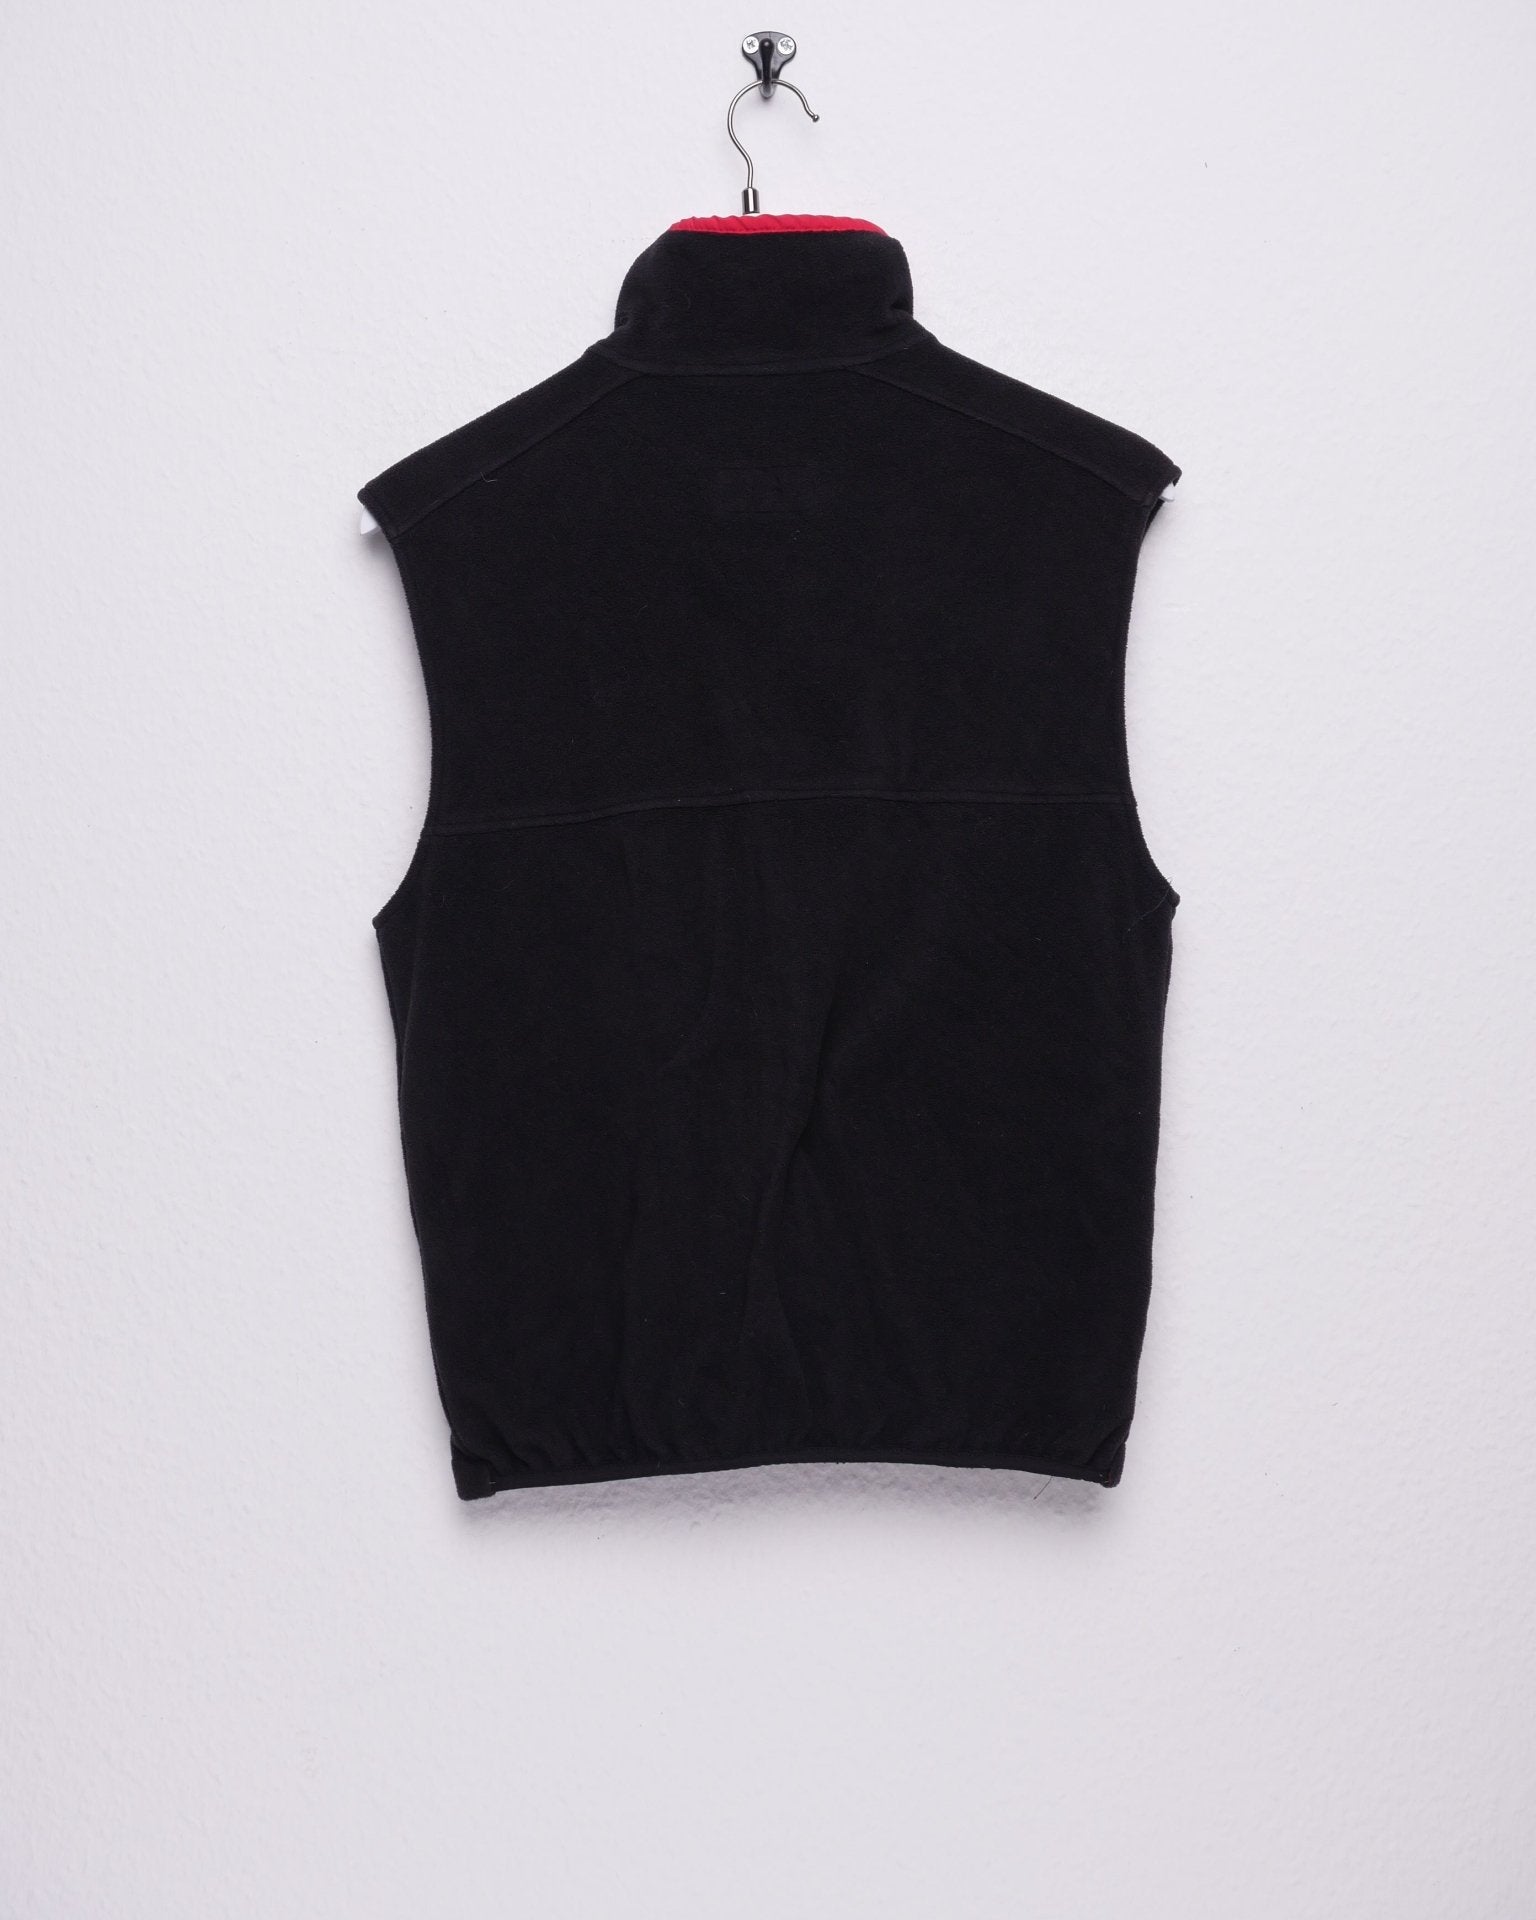 L. L. Bean Patch black Fleece Vest Zip Sweater - Peeces